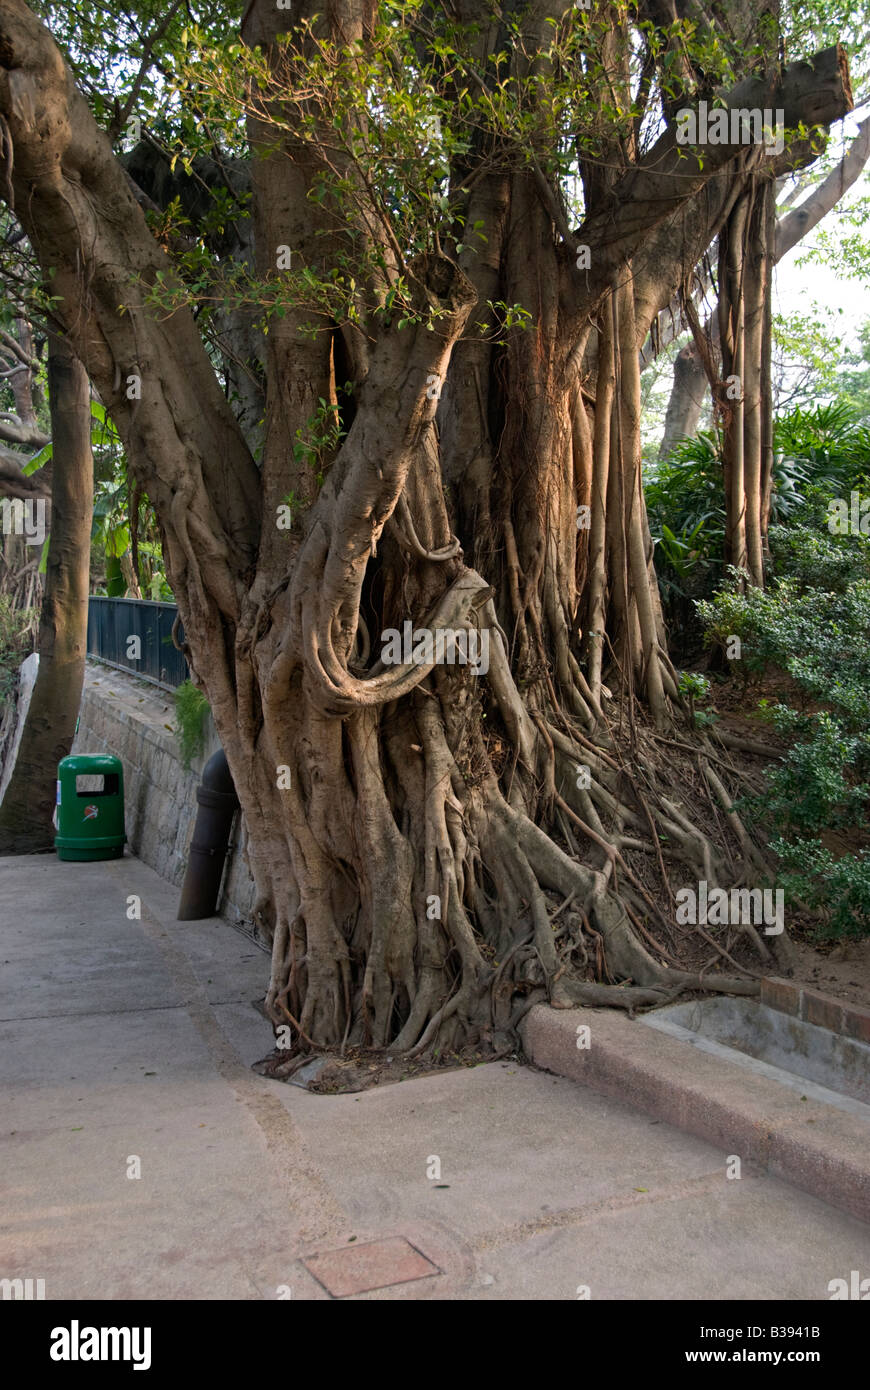 Chinese Banyan tree: Ficus microcarpa.  Hong Kong, China Stock Photo